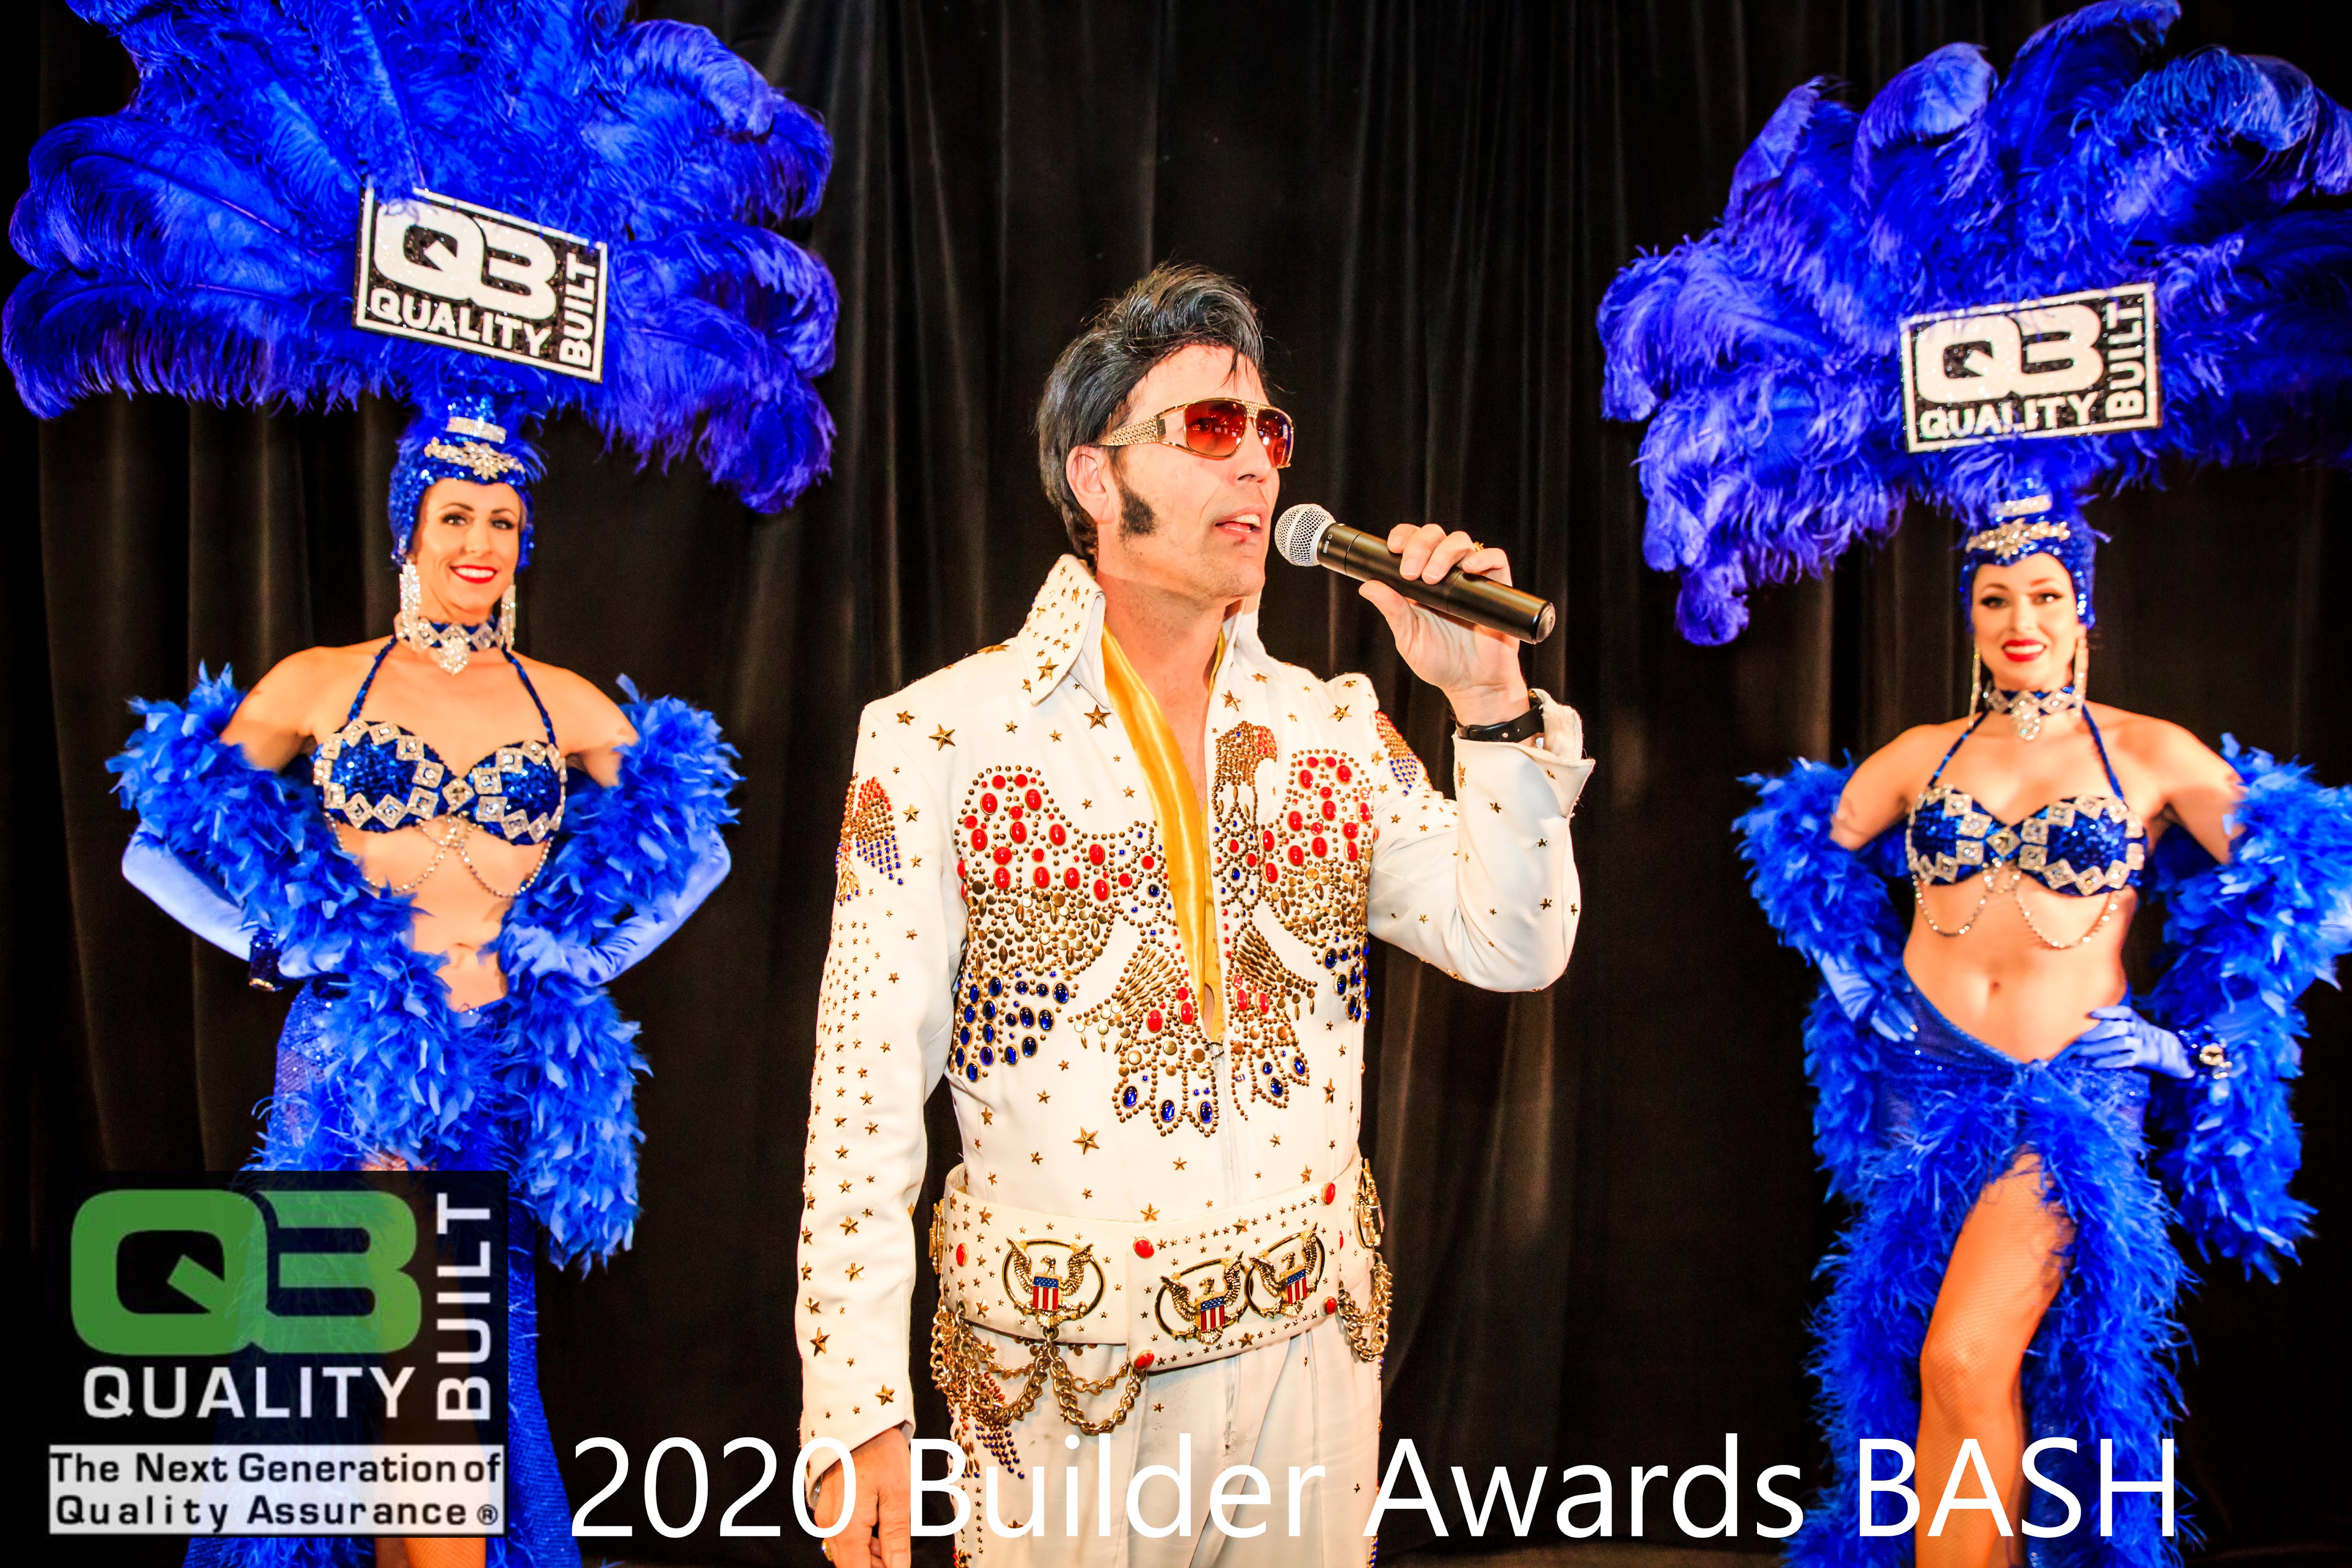 Elvis and Showgirls at QB Builder Awards Bash